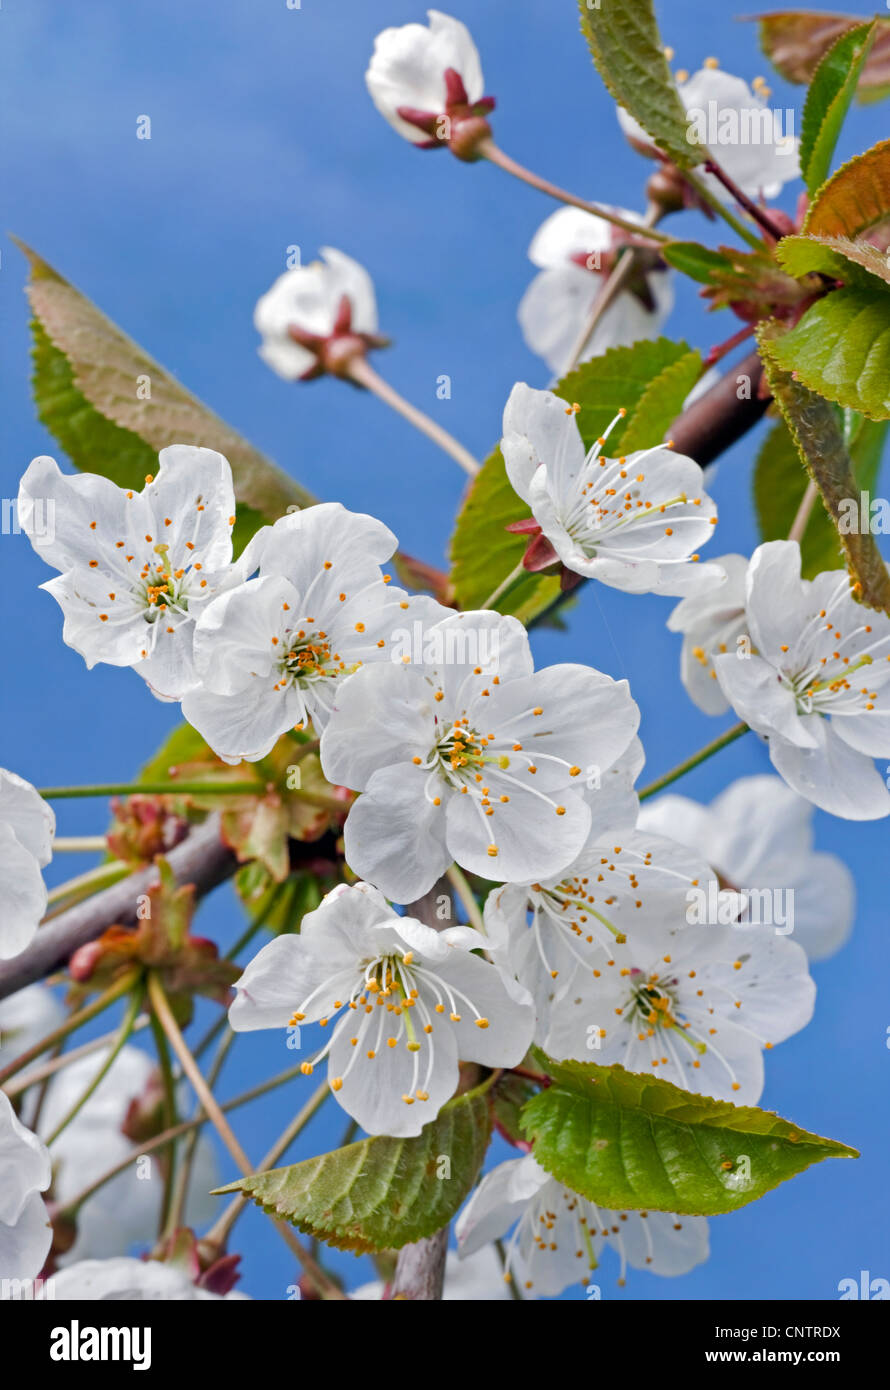 L'épanouissement de cerise sauvage / Sweet cherry (Prunus avium) avec l'éclatement des bourgeons et des fleurs blanches au printemps émergents, Belgique Banque D'Images